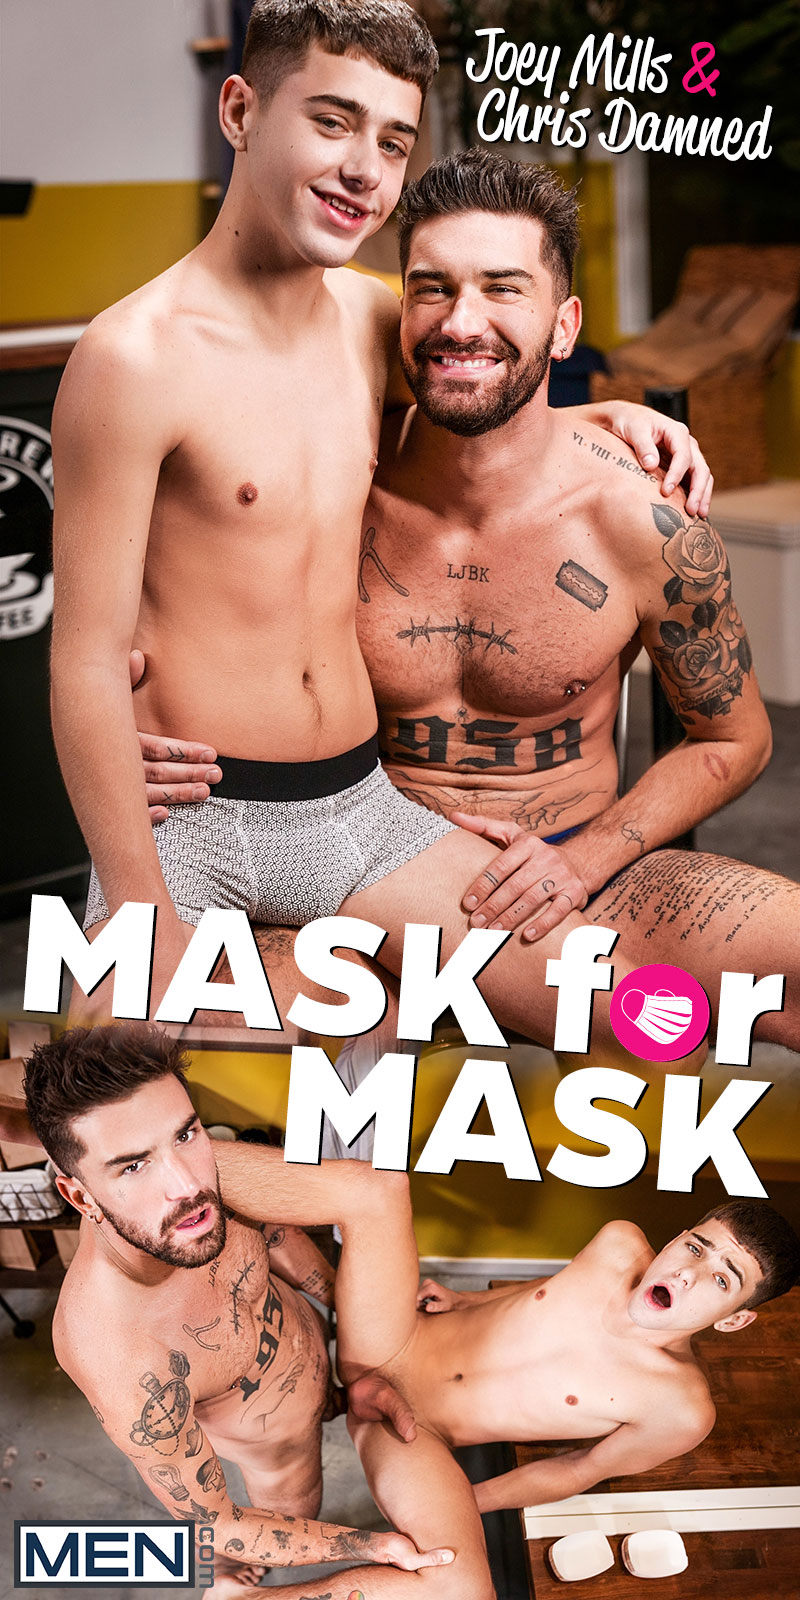 Men.com: Chris Damned fucks Joey Mills bareback in "Mask for Mask"